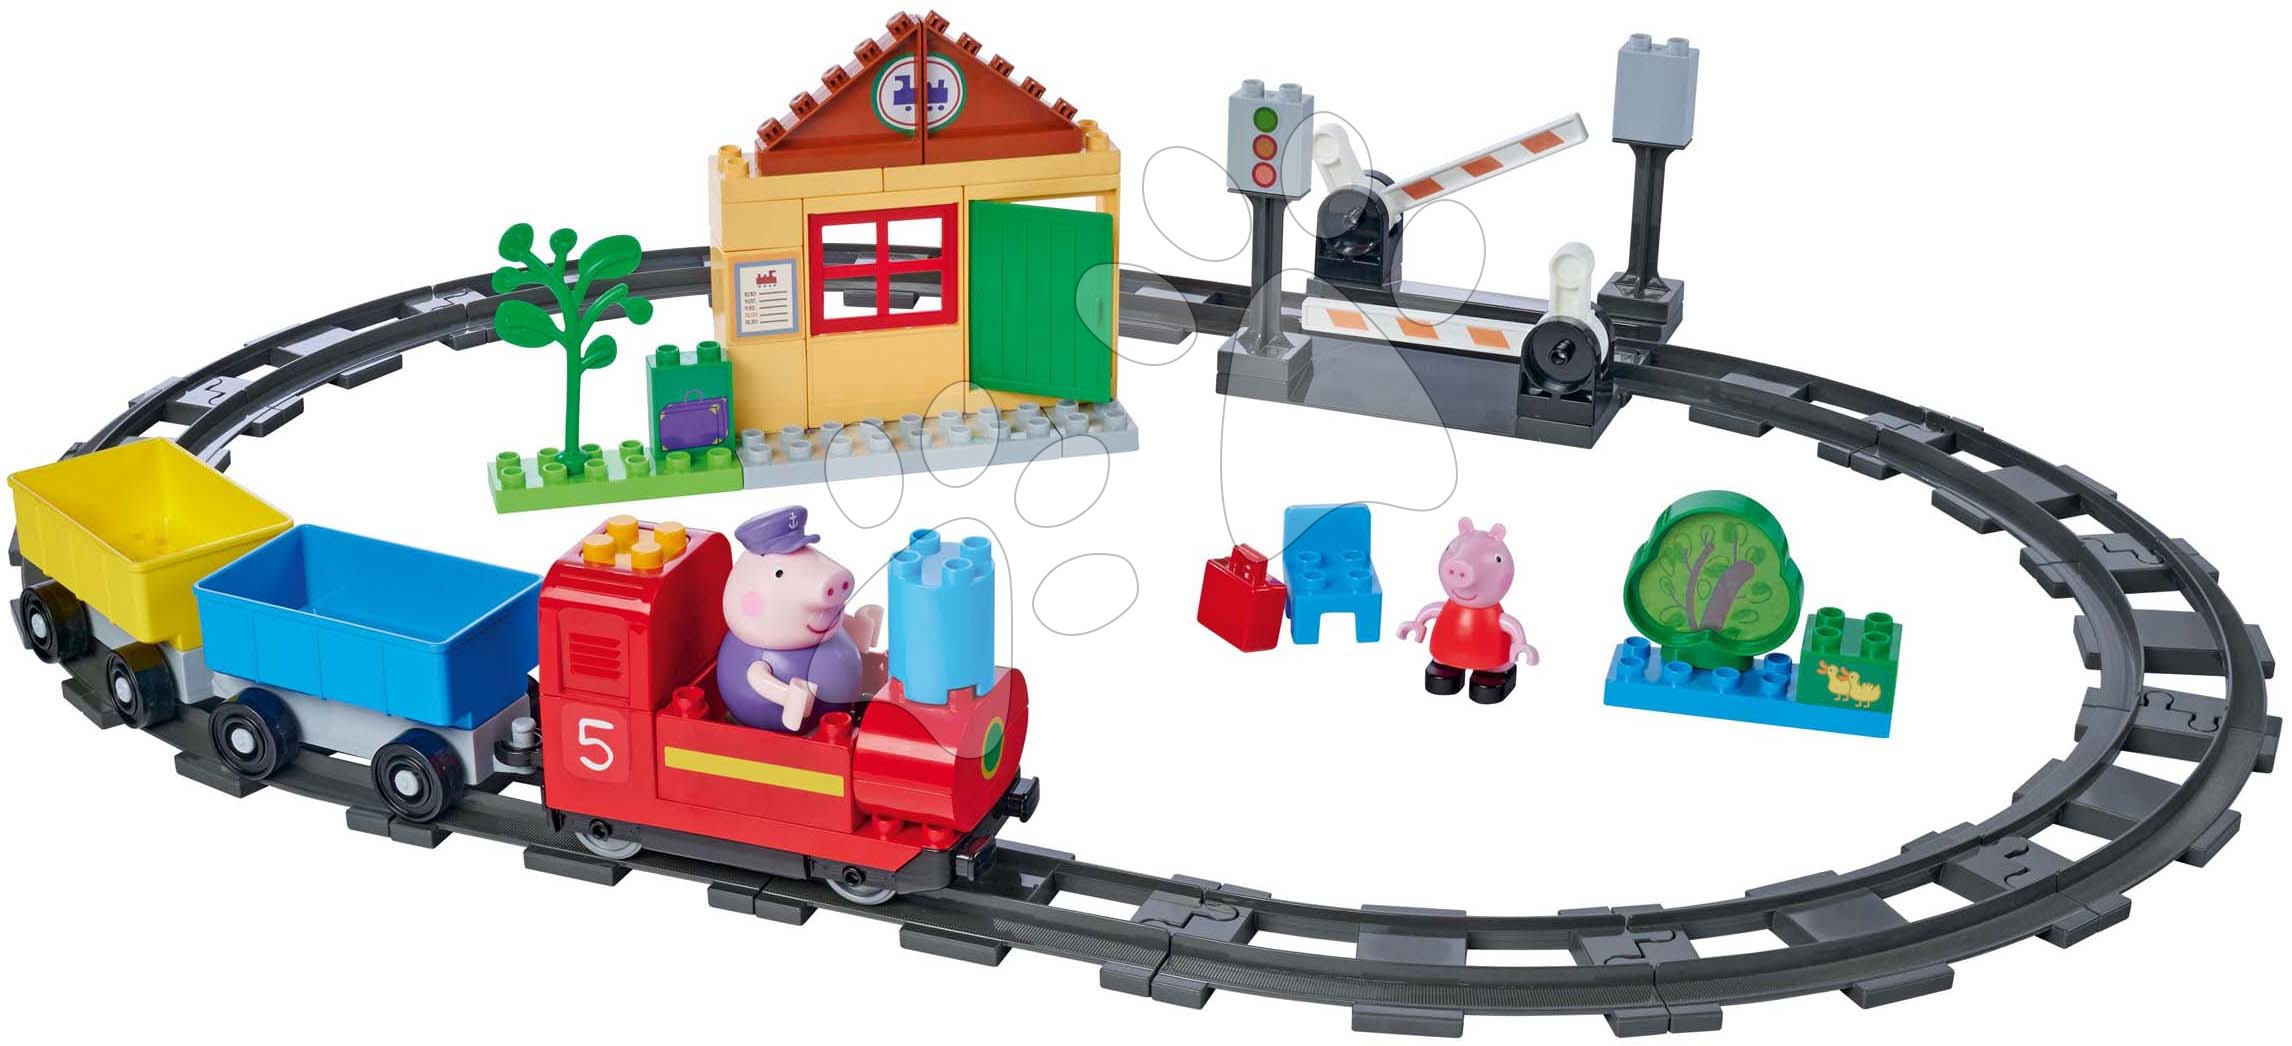 Stavebnice ako LEGO - Stavebnica elektronická Peppa Pig Train Fun PlayBig Bloxx BIG železnica so zvukom a 2 figúrkami 55 dielov od 1,5-5 rokov